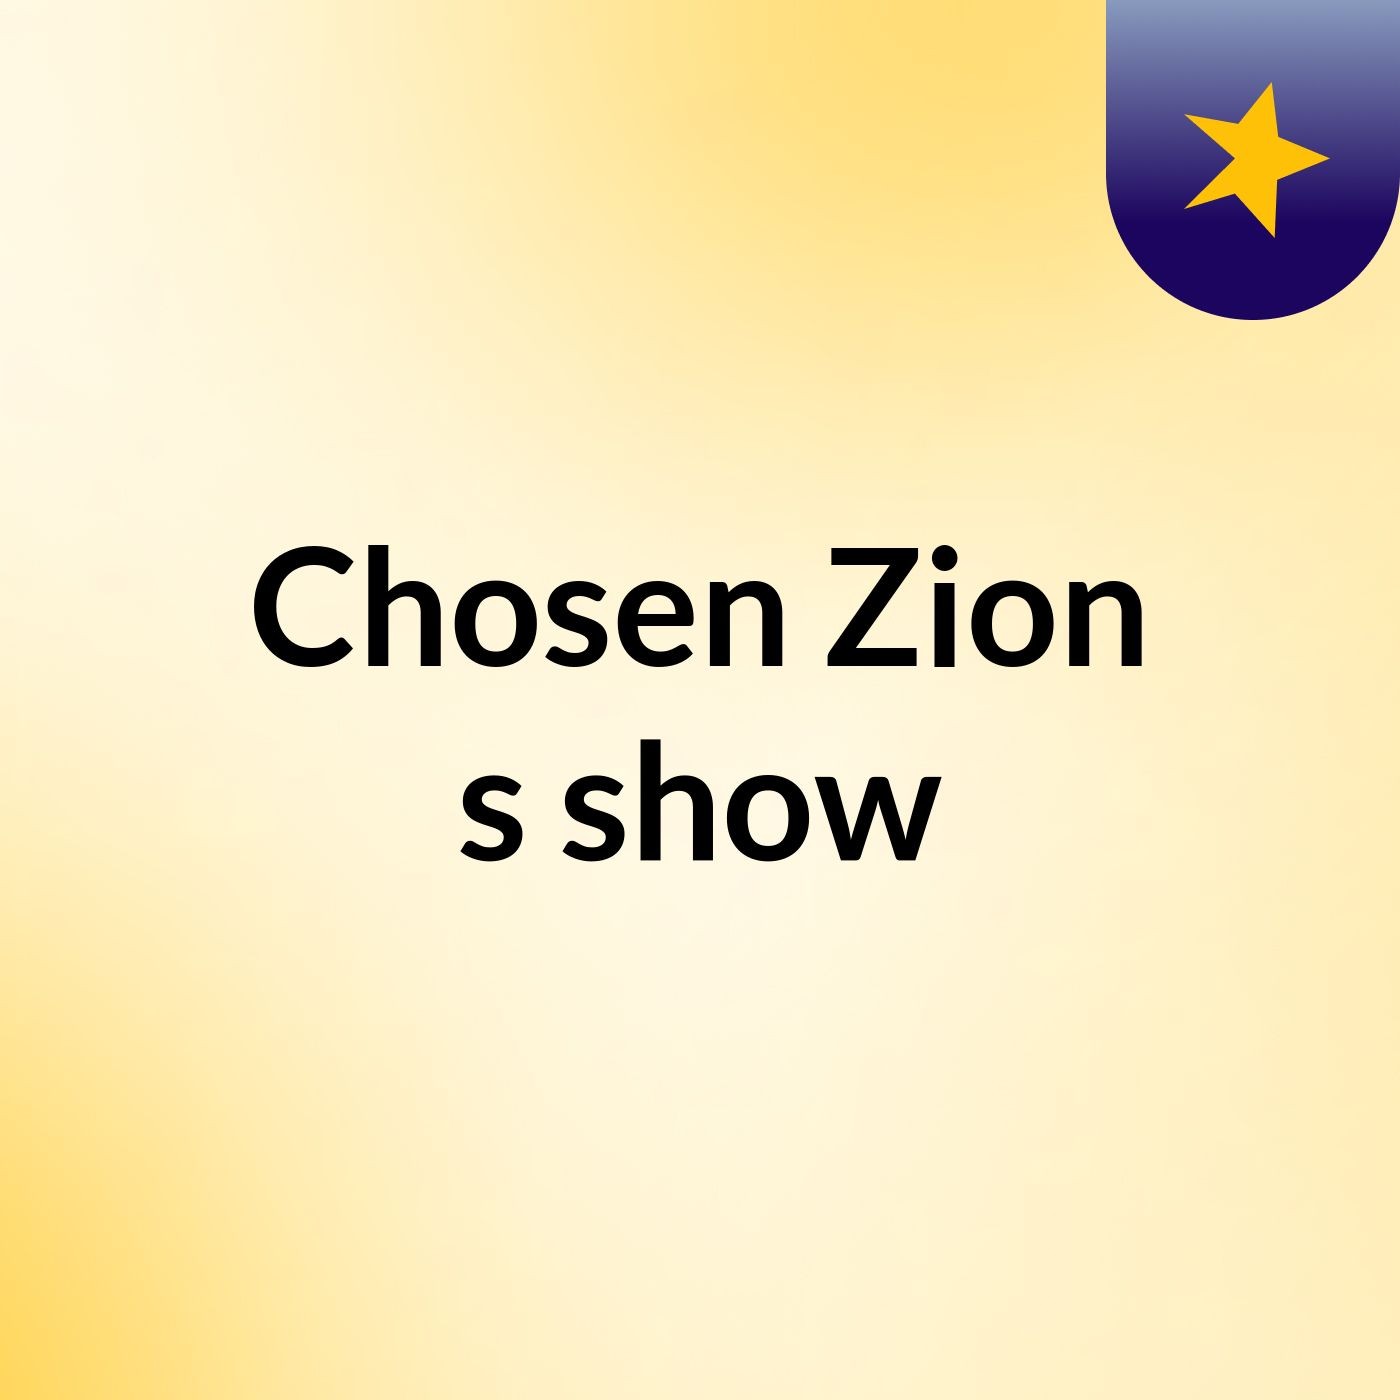 Chosen Zion's show